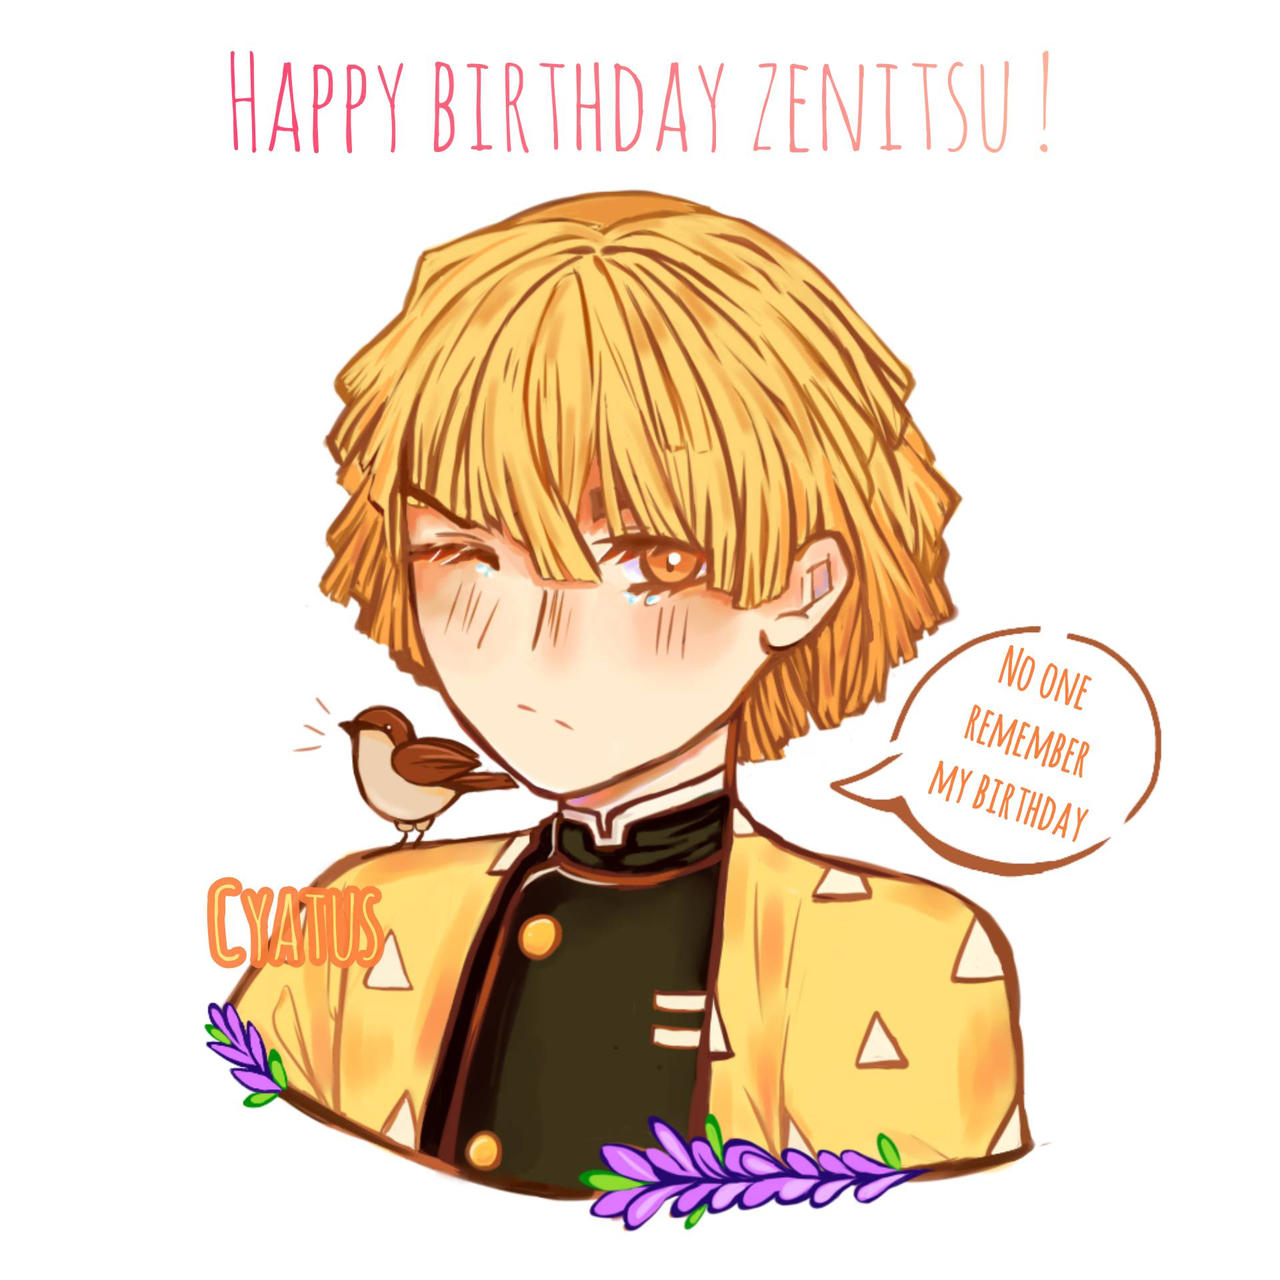 Happy Birthday Zenitsu ! by TebaMohammedA on DeviantArt